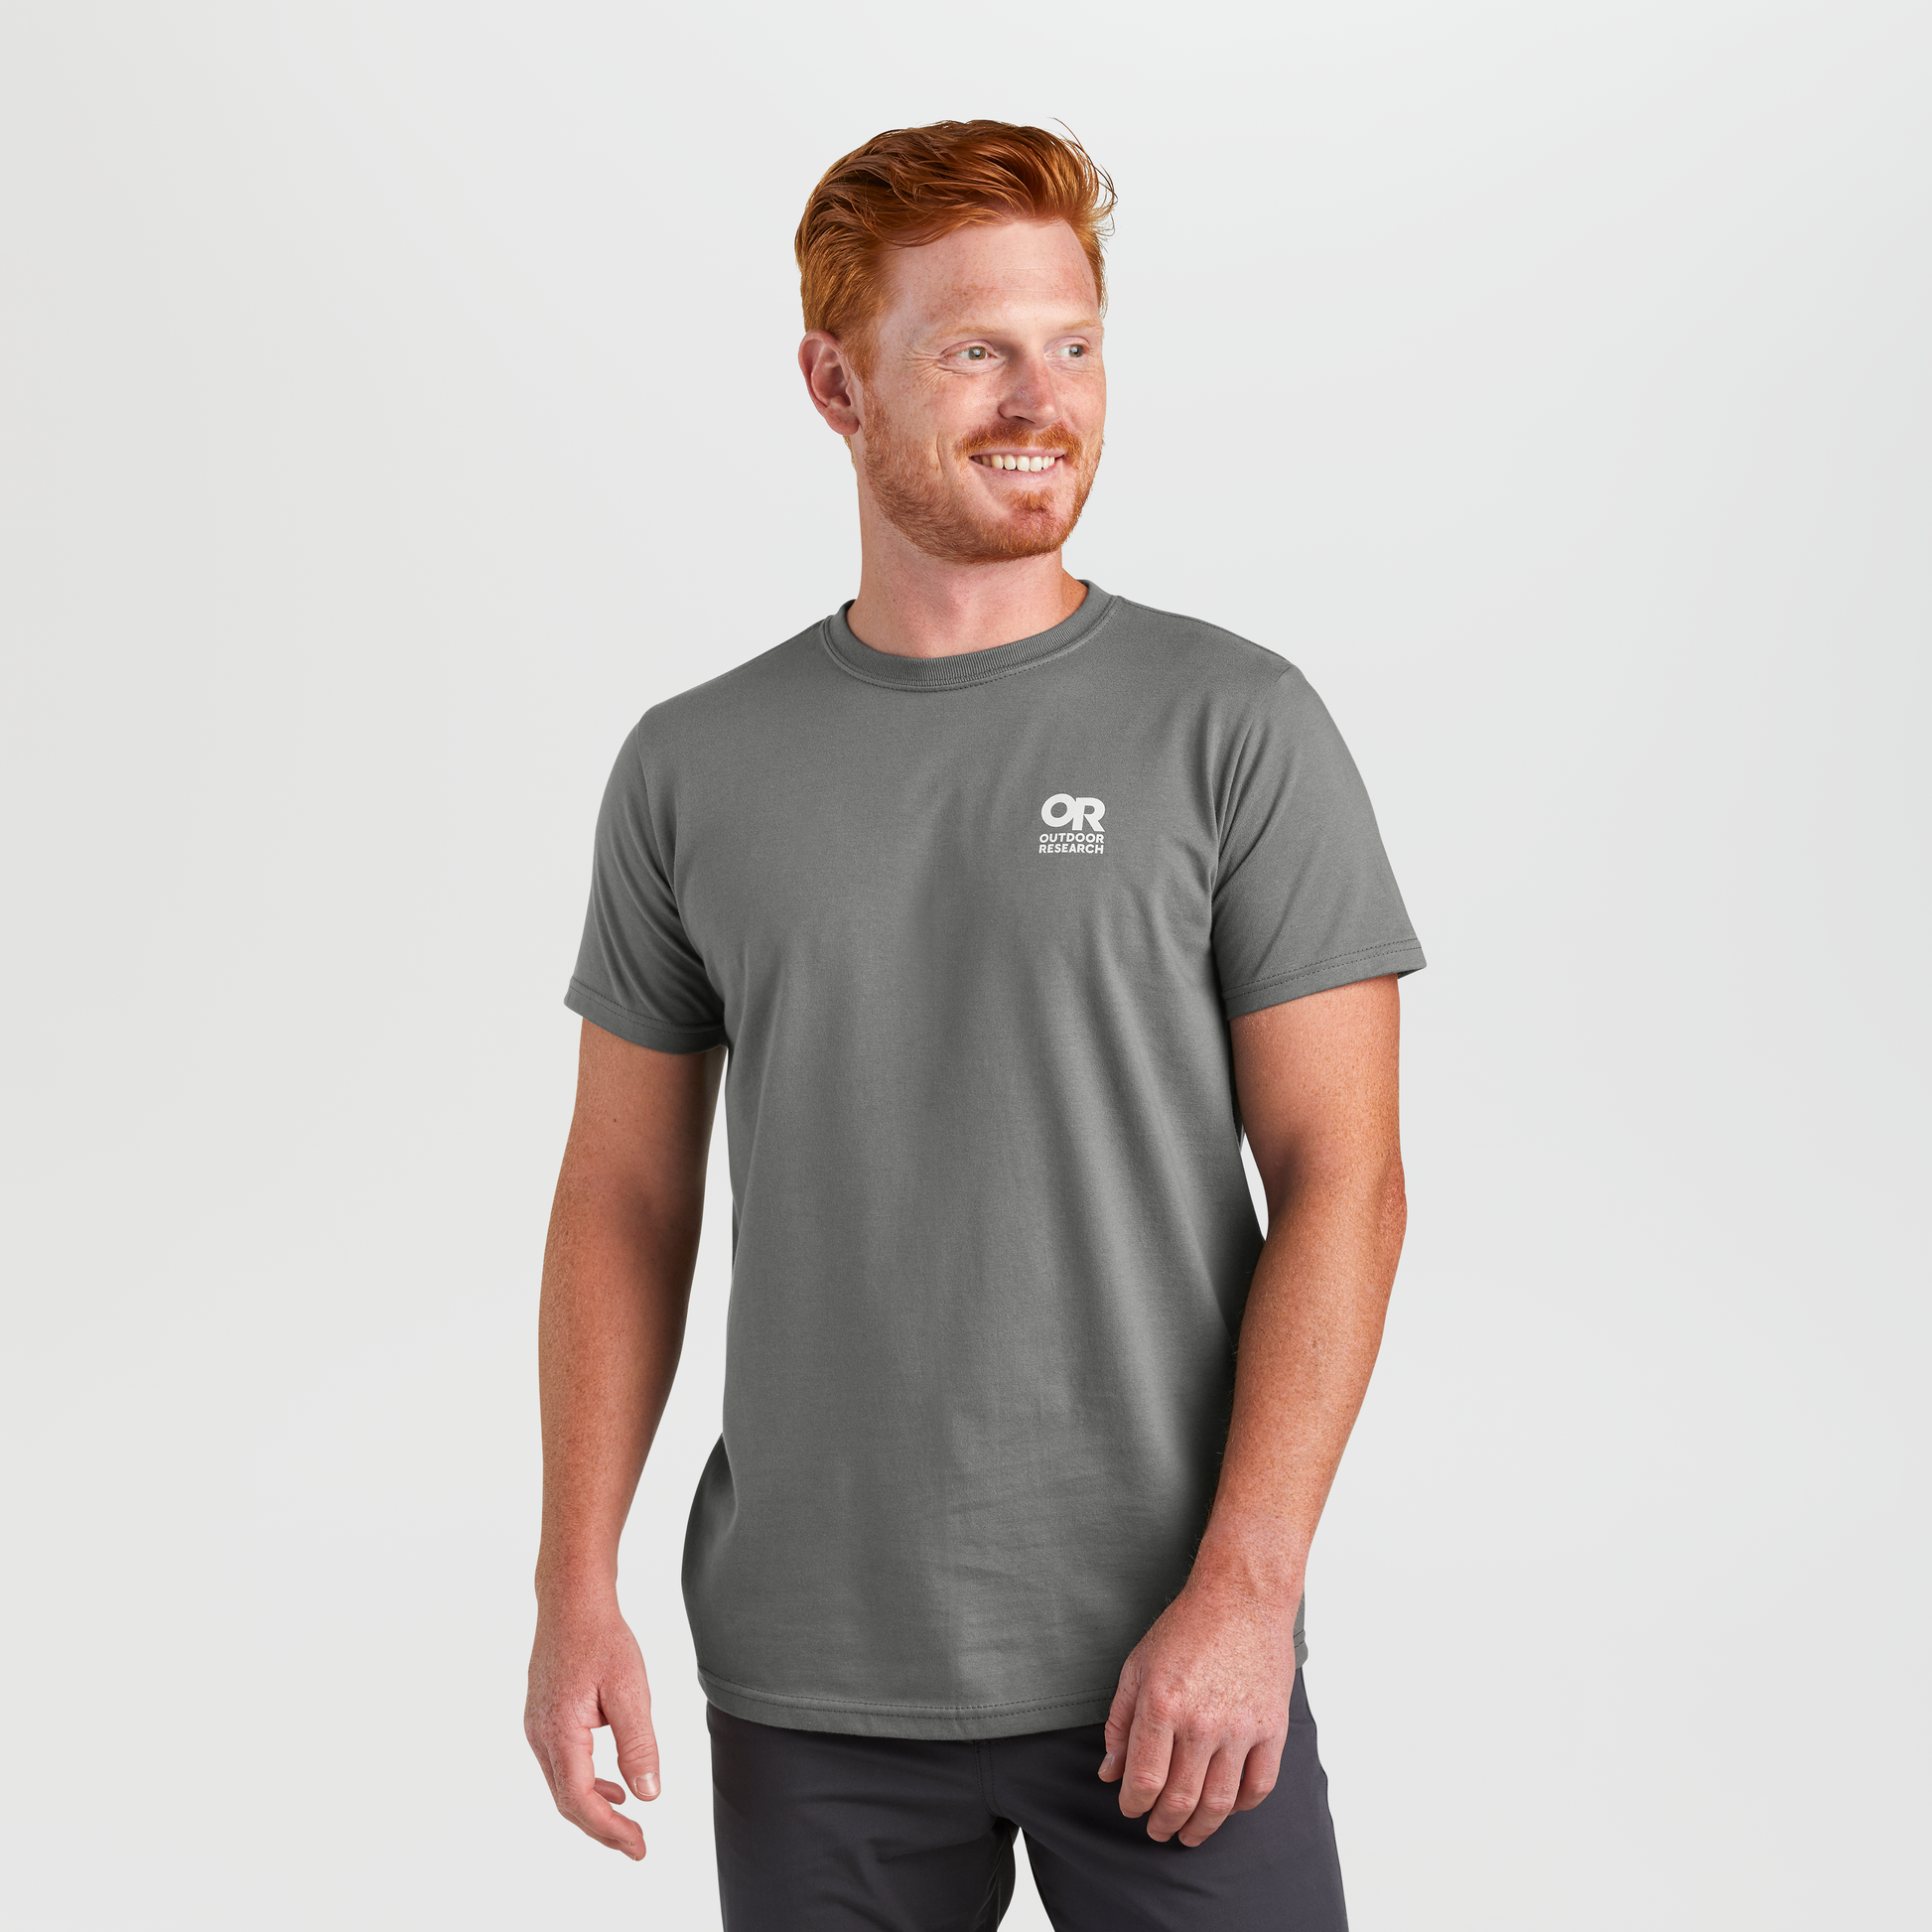 Zipper Print T-Shirt - Men - OBSOLETES DO NOT TOUCH